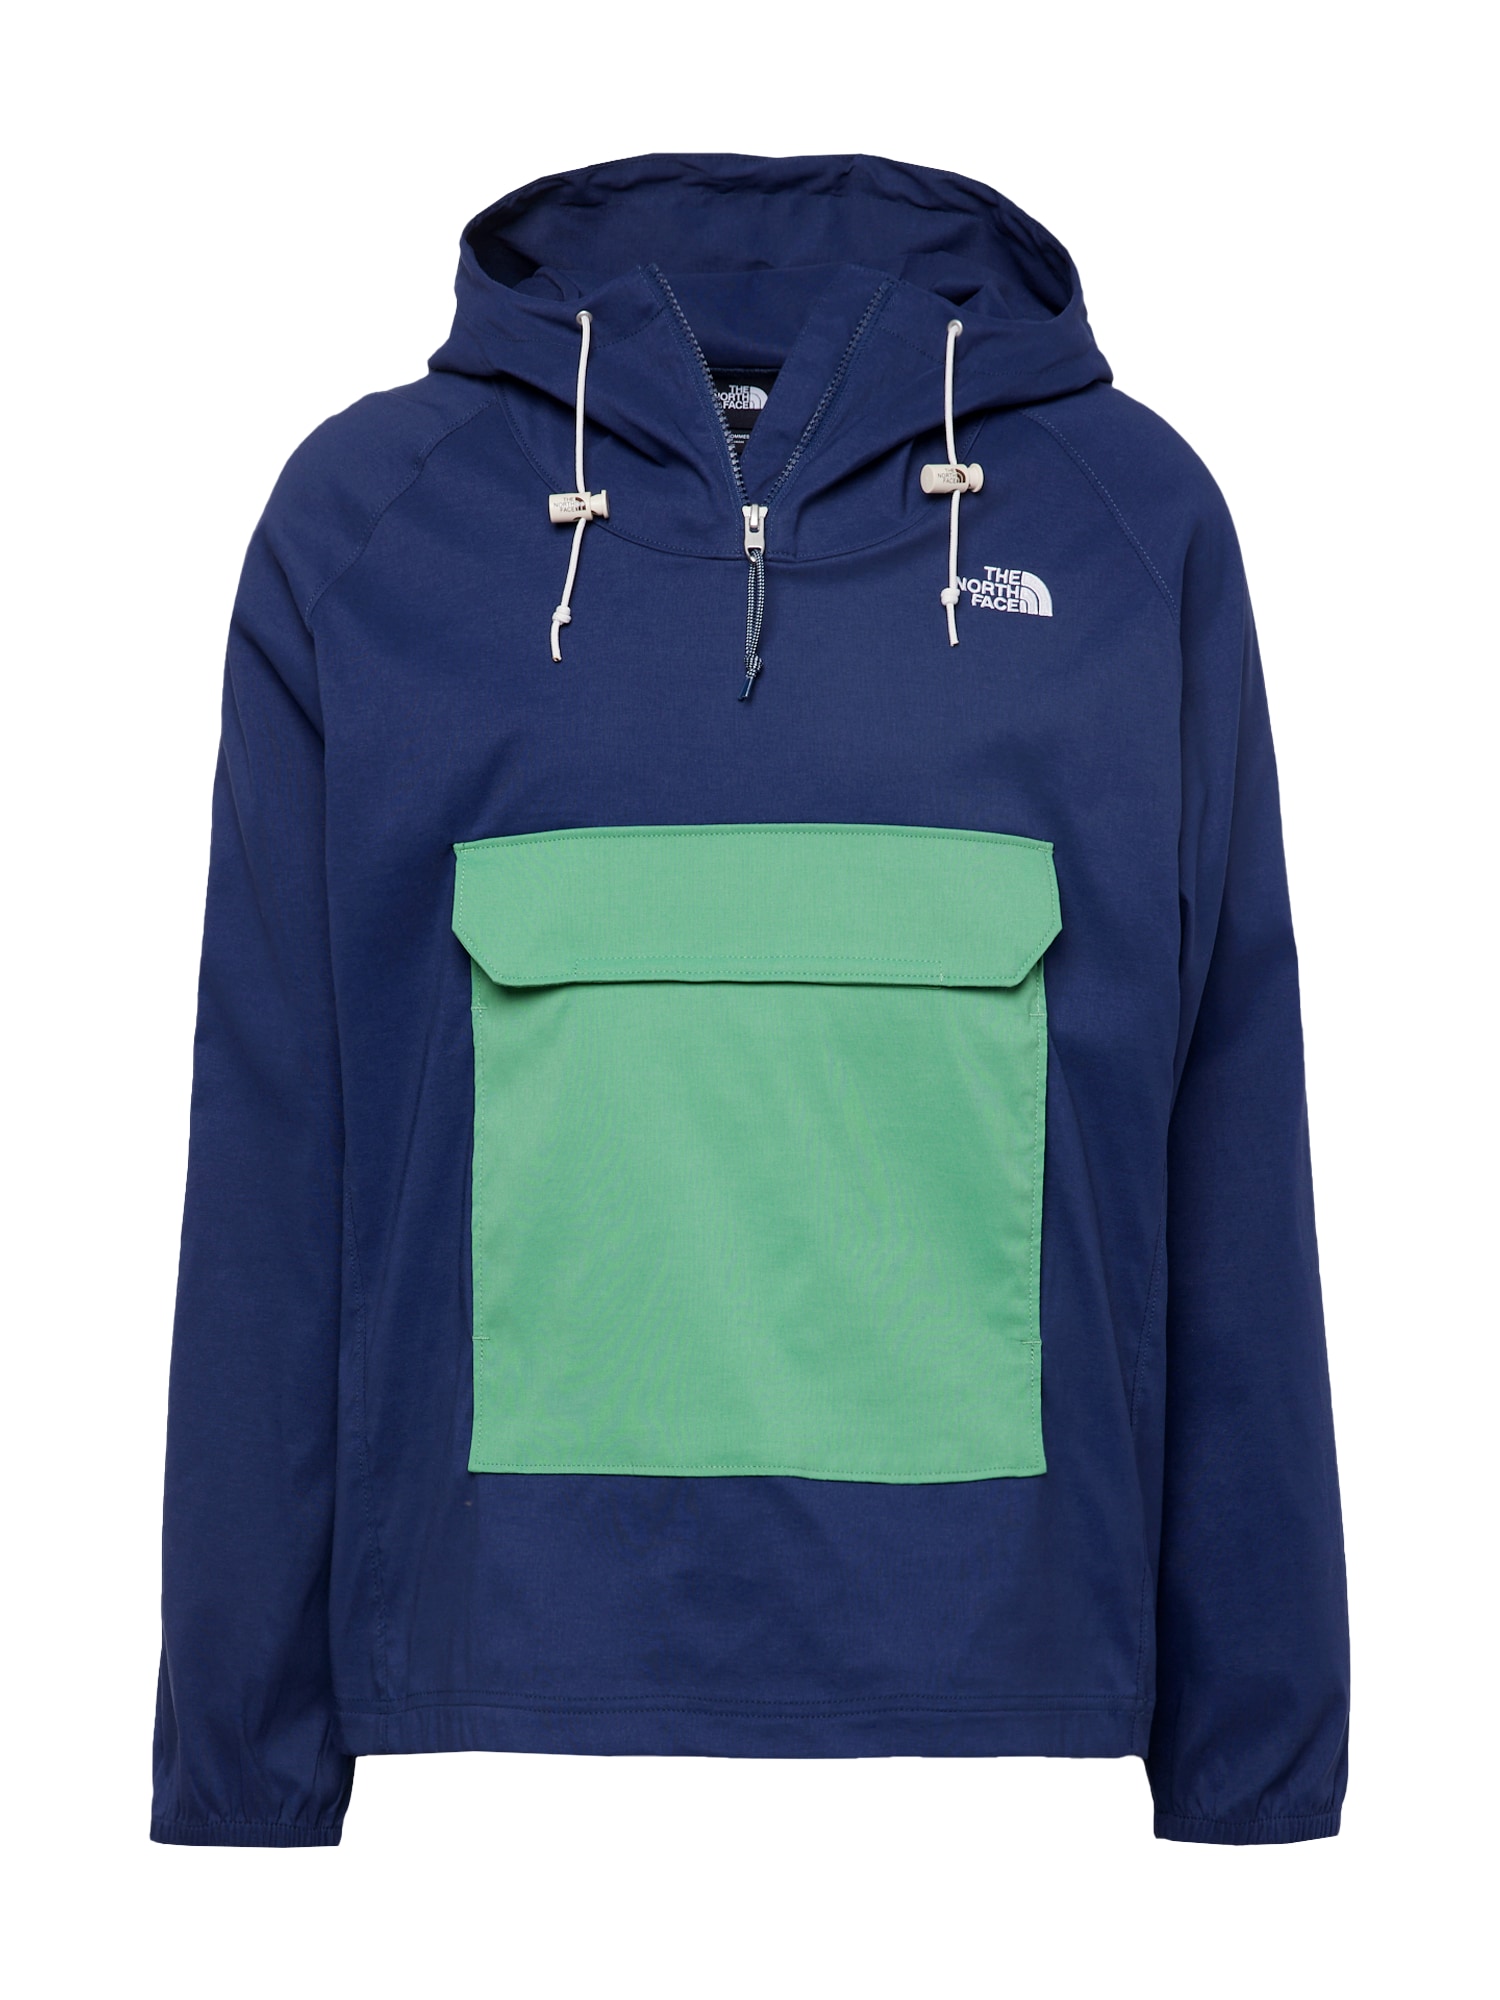 THE NORTH FACE Outdoorová bunda námořnická modř / světle zelená / bílá